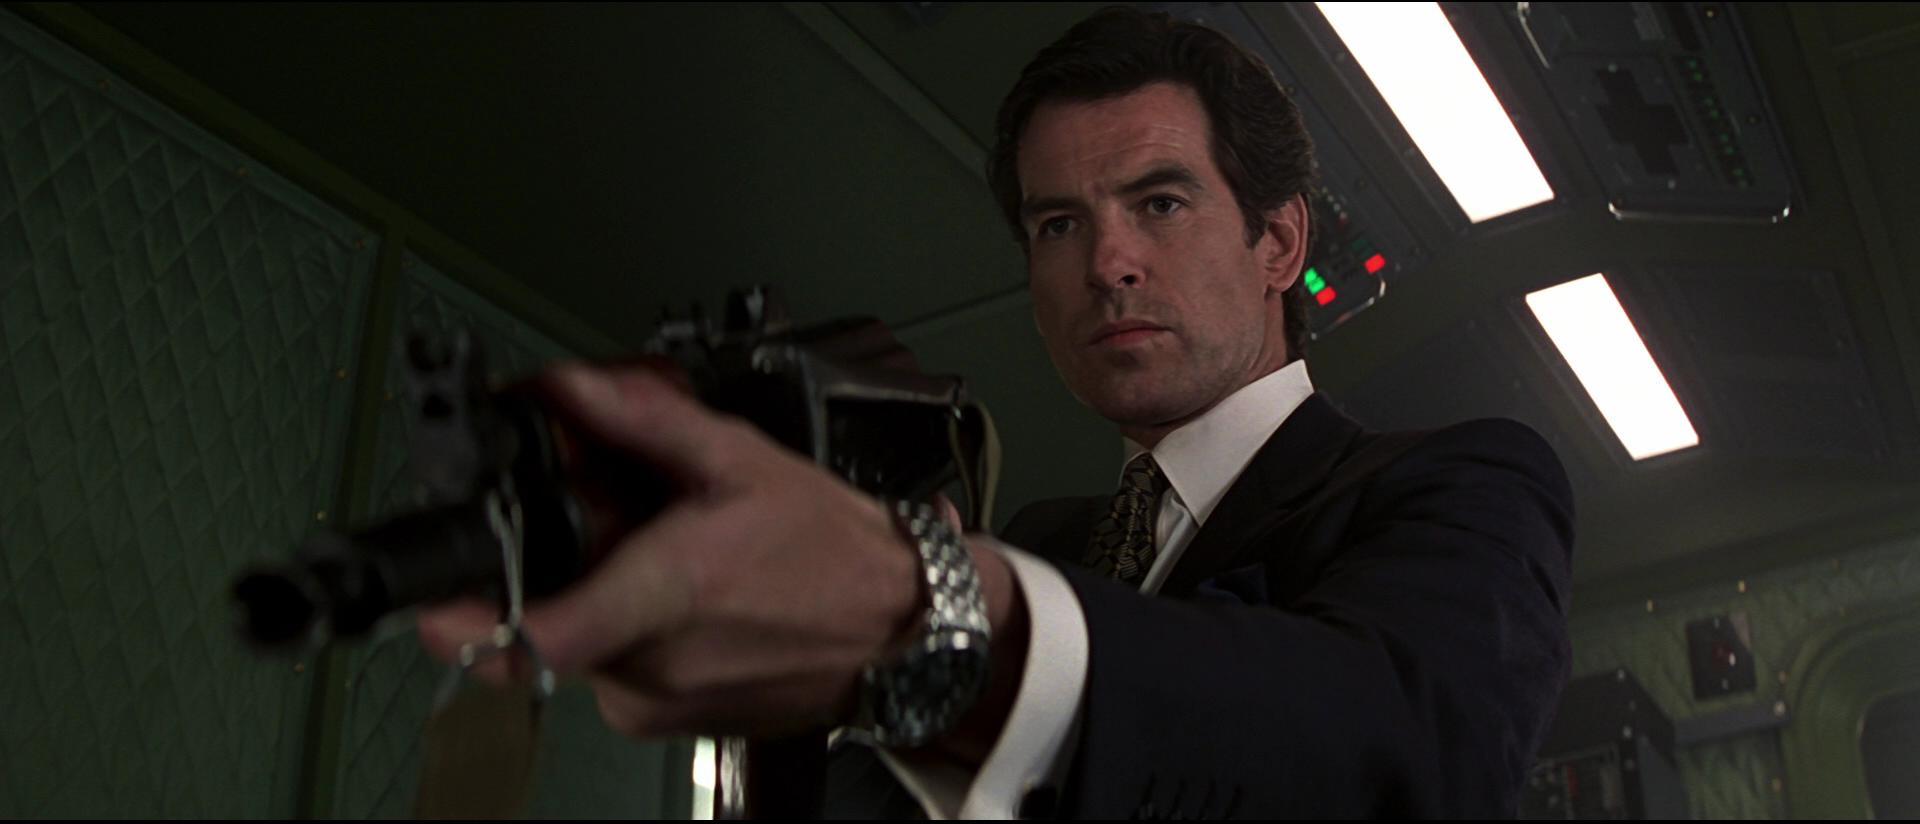 บรอสแนน ในบท 007 เมื่อปี 1995